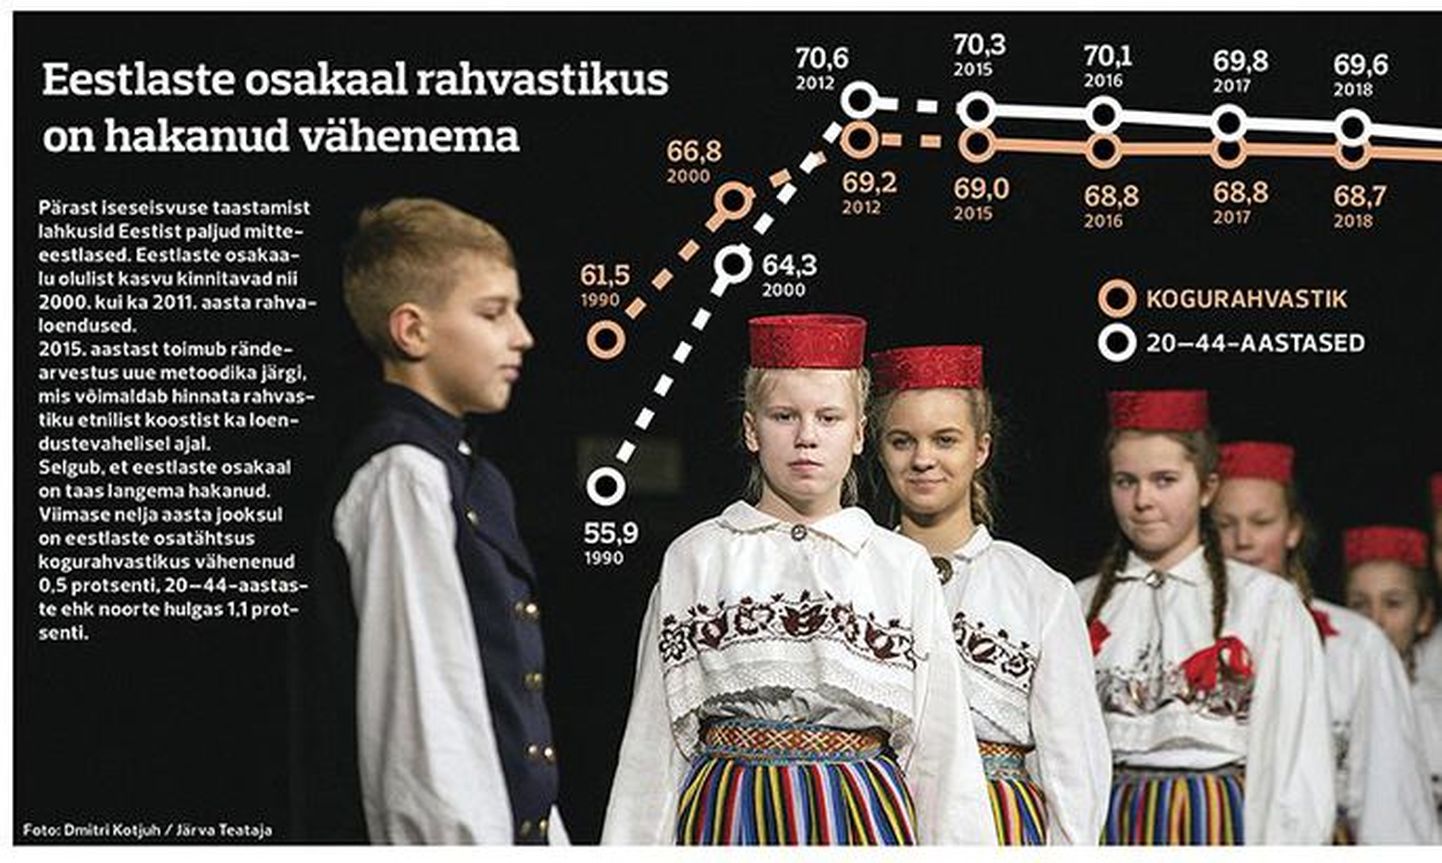 Доля эстоснцев в общей численности населения Эстонии сокращается.